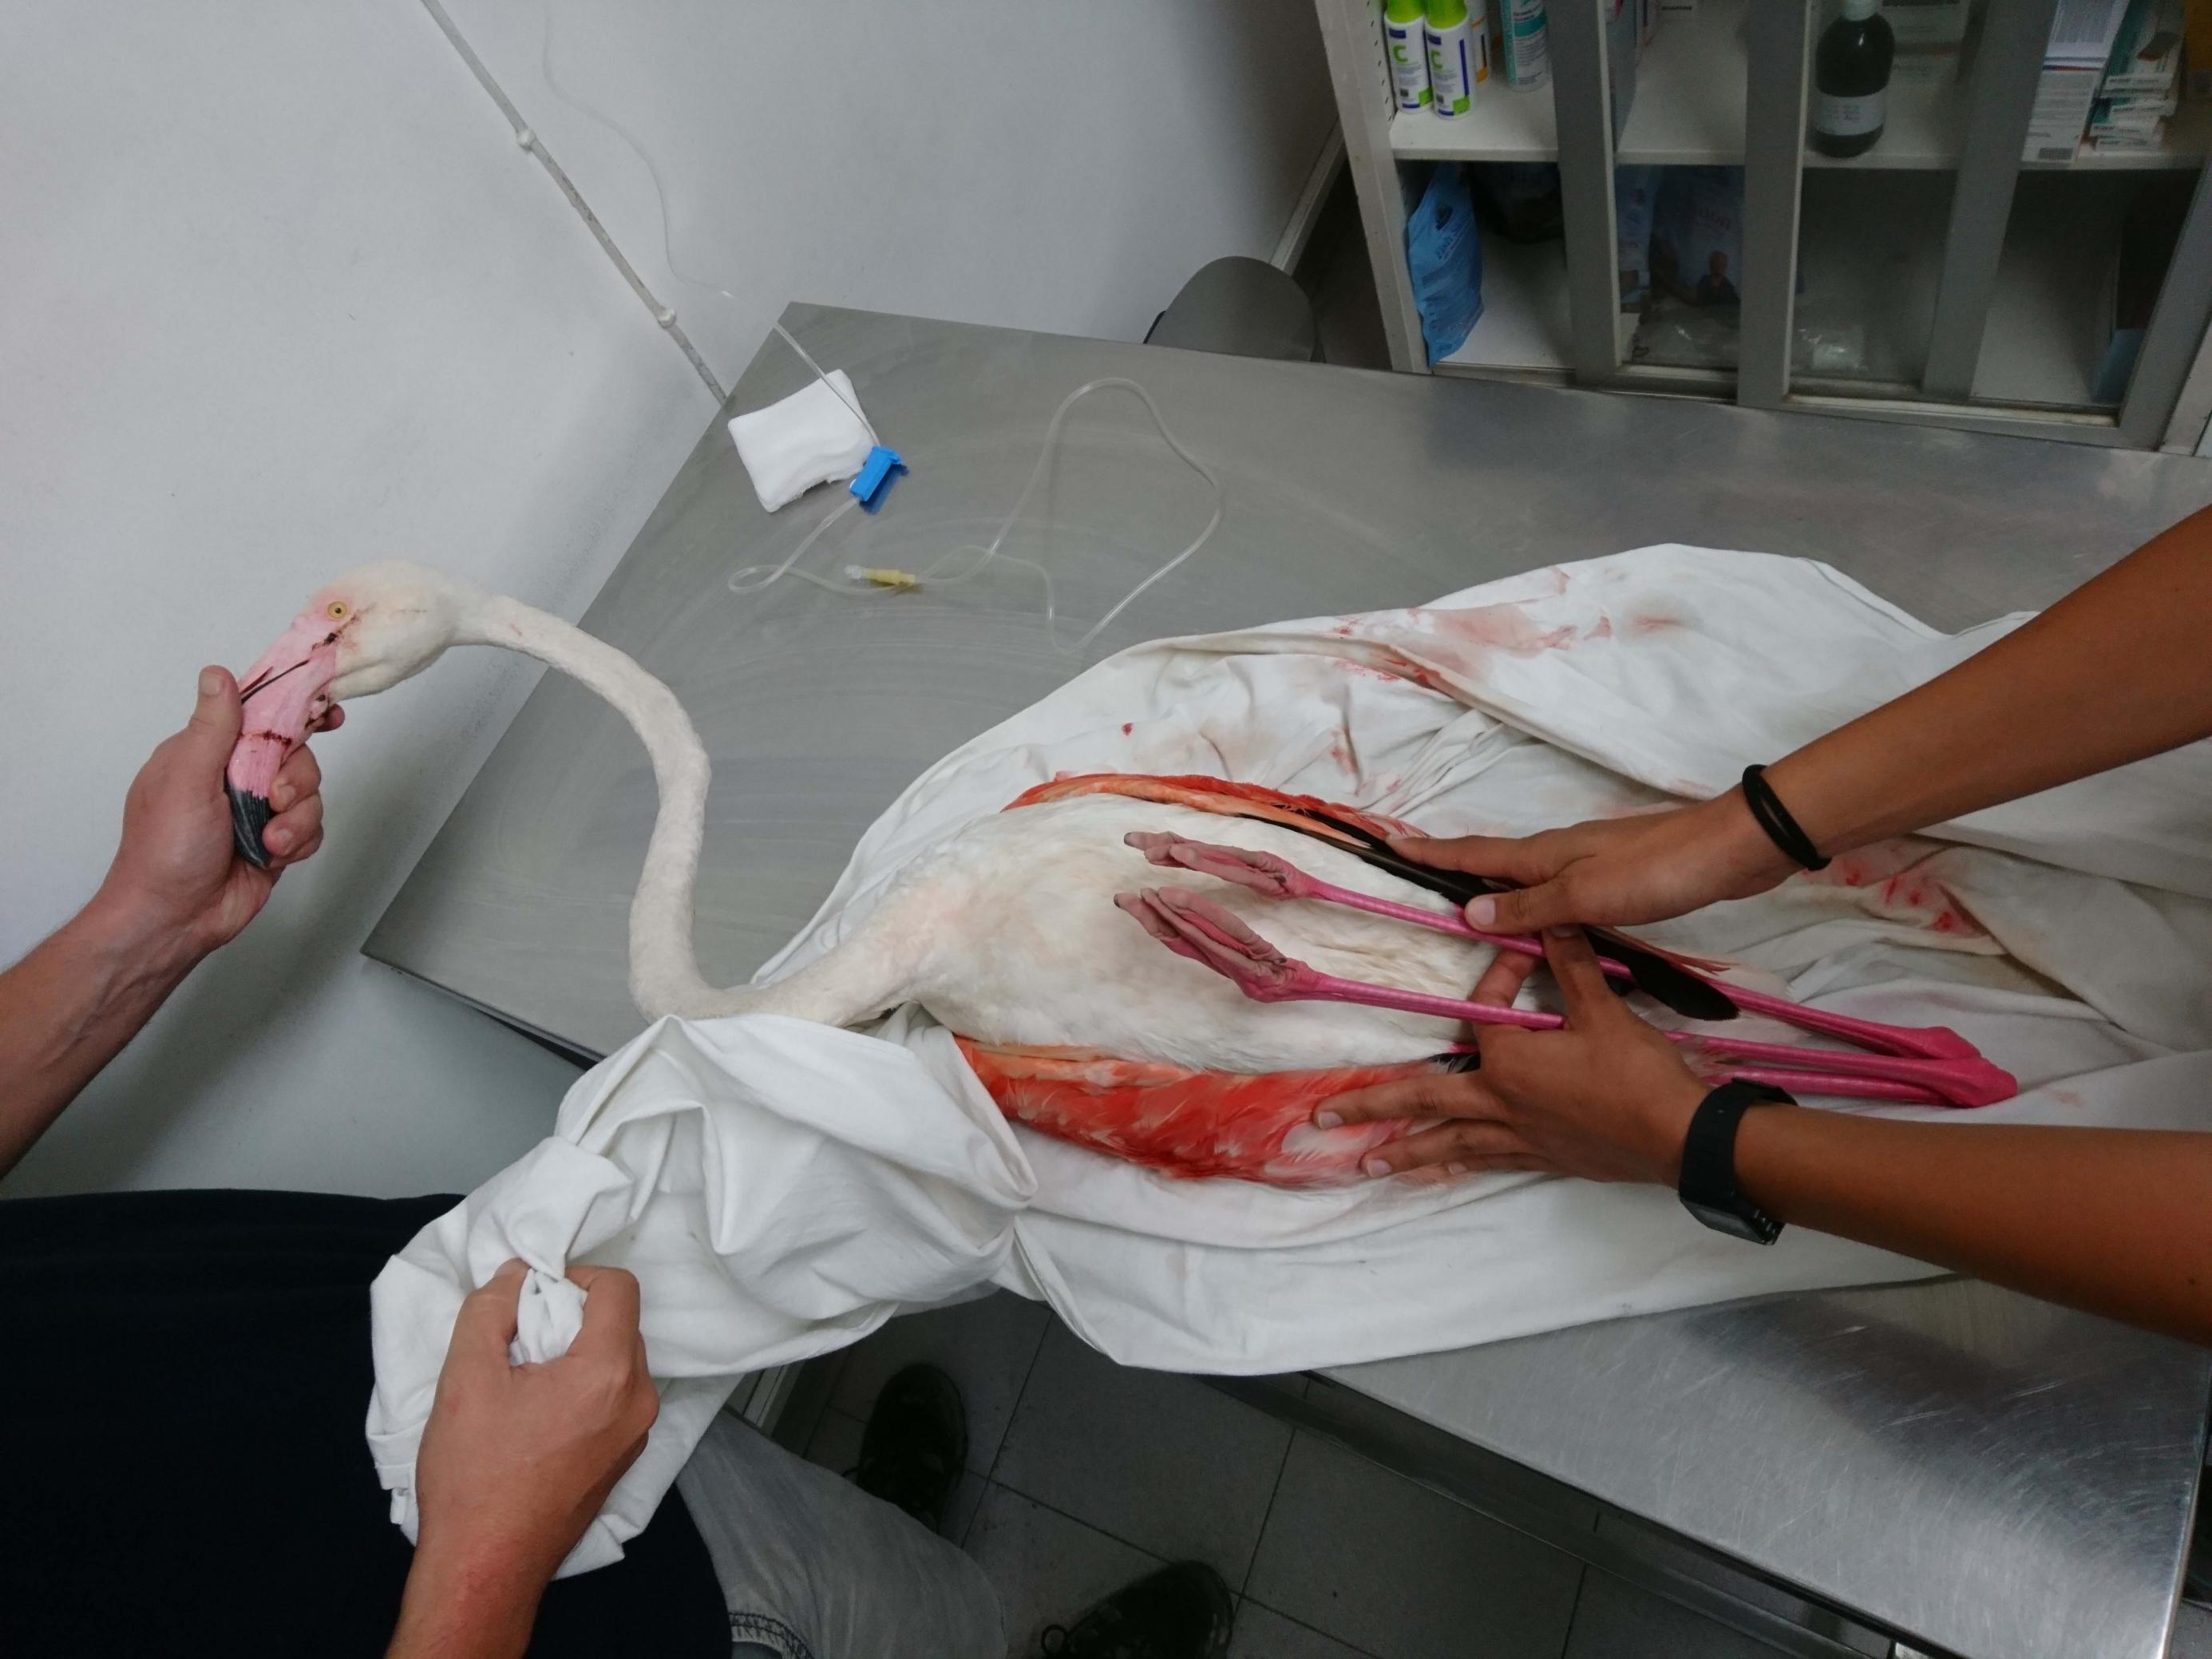 Ein verletzter Flamingo liegt auf einem Metalltisch. Er wird von zwei Personen festgehalten.